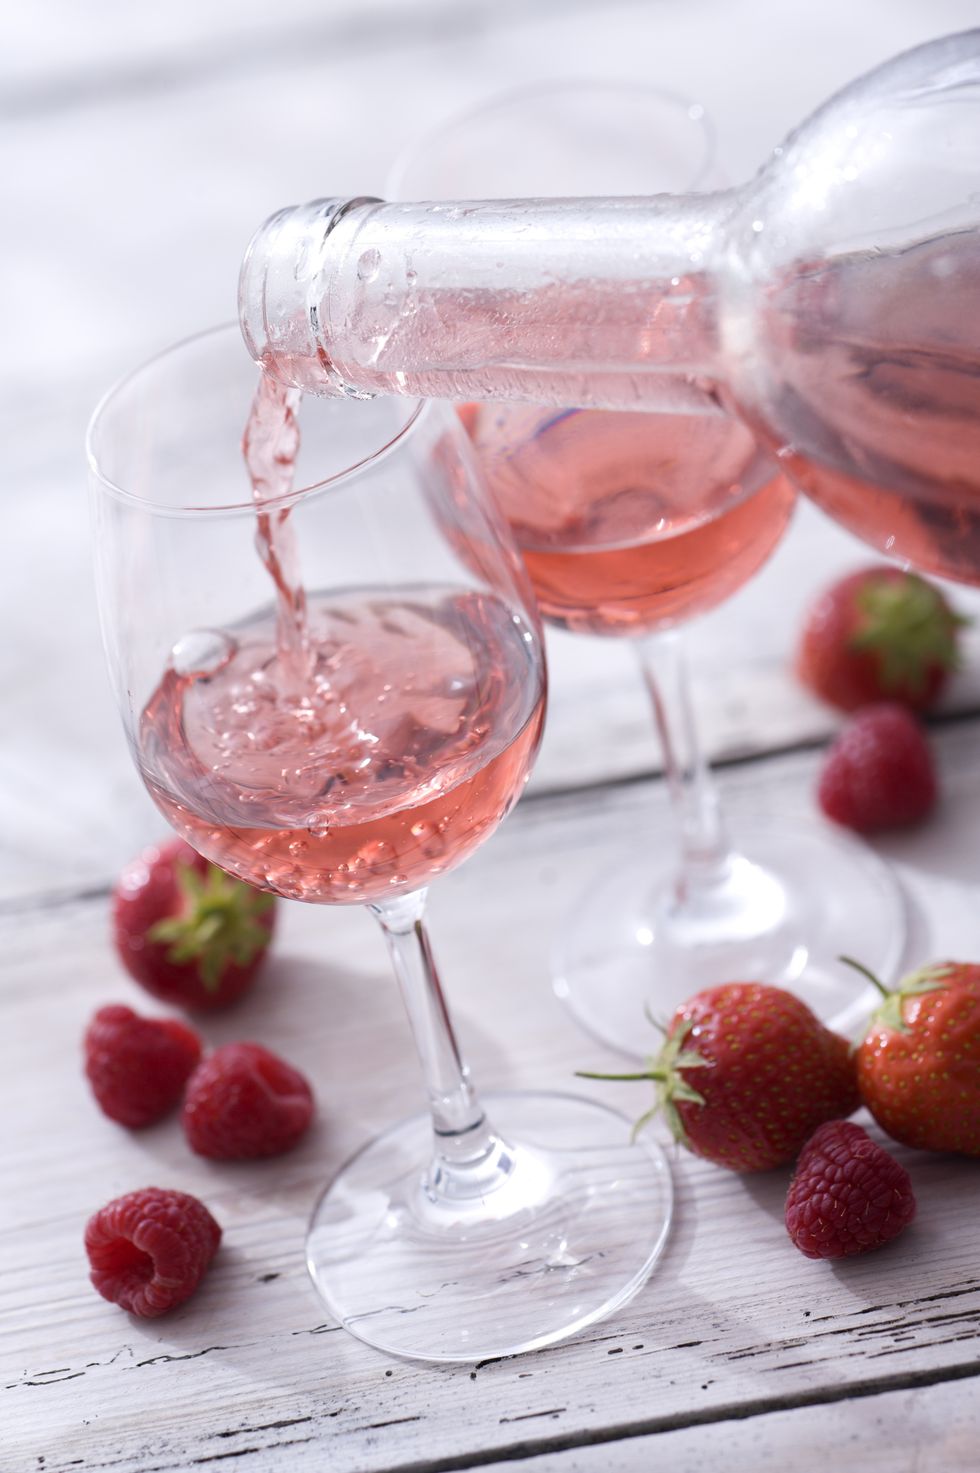 Drink, Strawberry, Food, Strawberries, Wine glass, Wine cocktail, Glass, Stemware, Raspberry, Berry, 